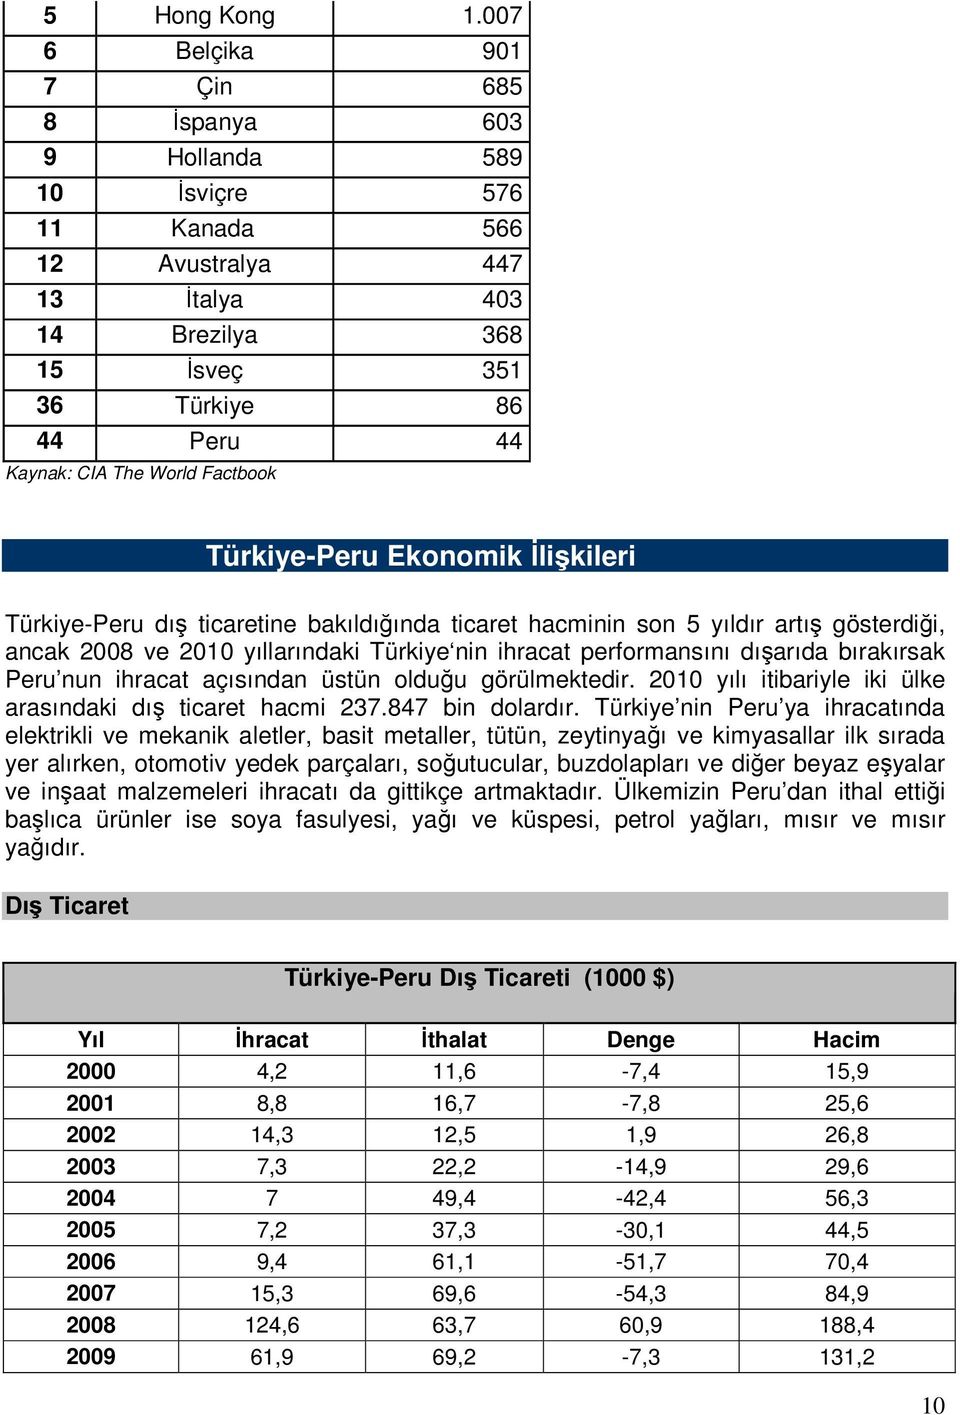 Factbook Türkiye-Peru Ekonomik Đlişkileri Türkiye-Peru dış ticaretine bakıldığında ticaret hacminin son 5 yıldır artış gösterdiği, ancak 2008 ve 2010 yıllarındaki Türkiye nin ihracat performansını